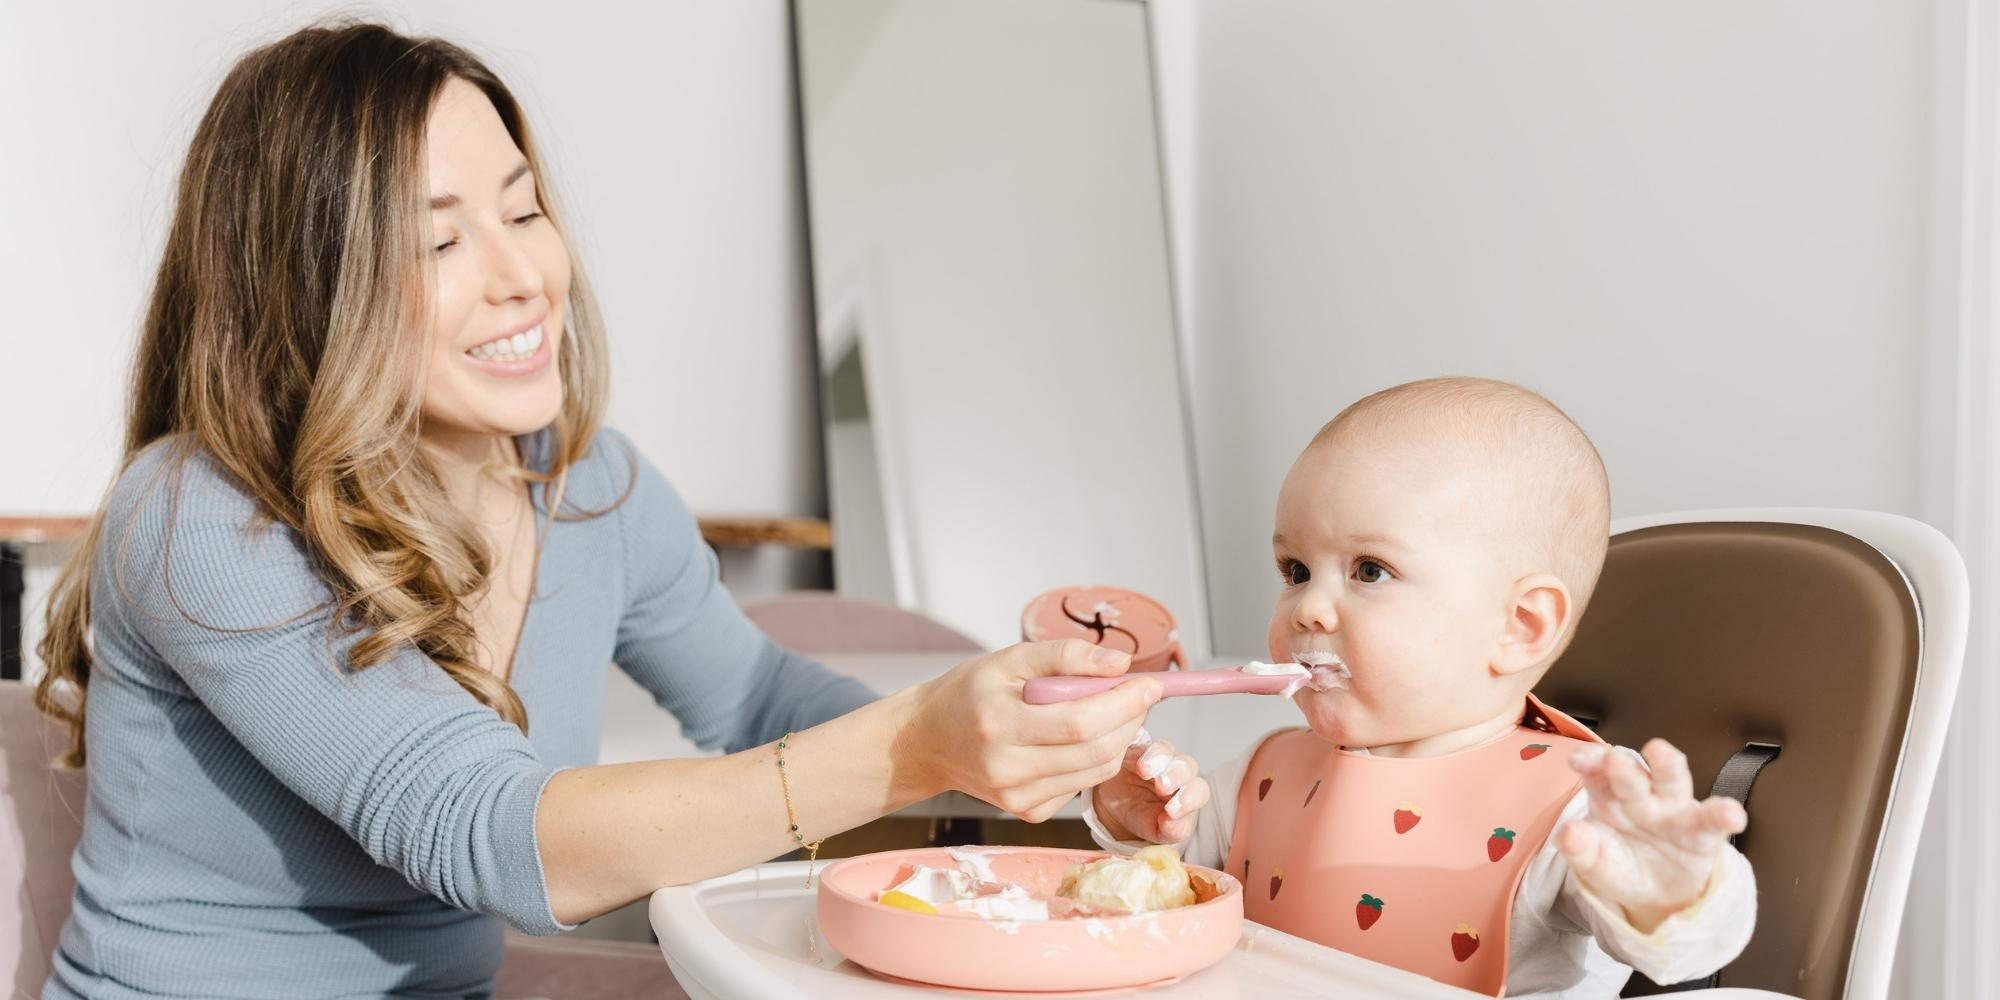 12 Pcs Silicone Baby Feeding Set Toddlers Led Weaning Feeding